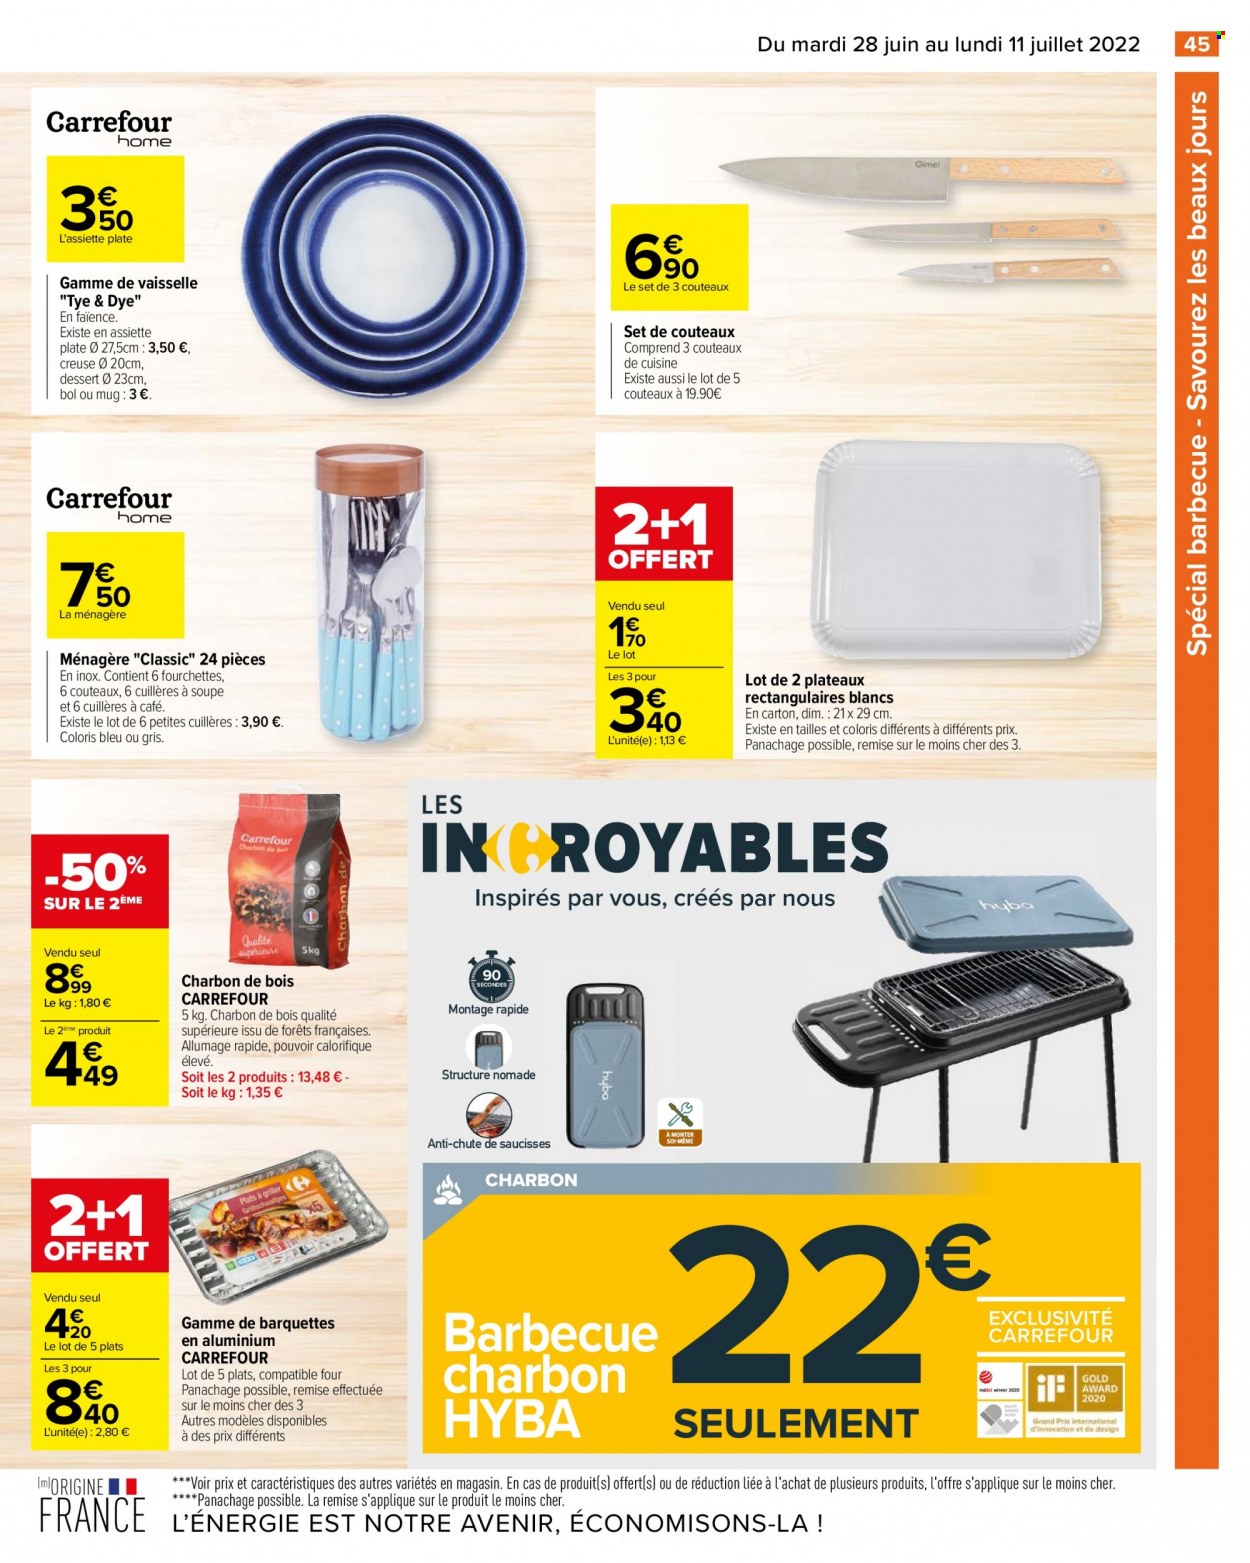 thumbnail - Catalogue Carrefour Hypermarchés - 28/06/2022 - 11/07/2022 - Produits soldés - saucisse, biscuits, couteau de cuisine, mug, ménagère, fourchette, Beaux Jours, barbecue. Page 47.